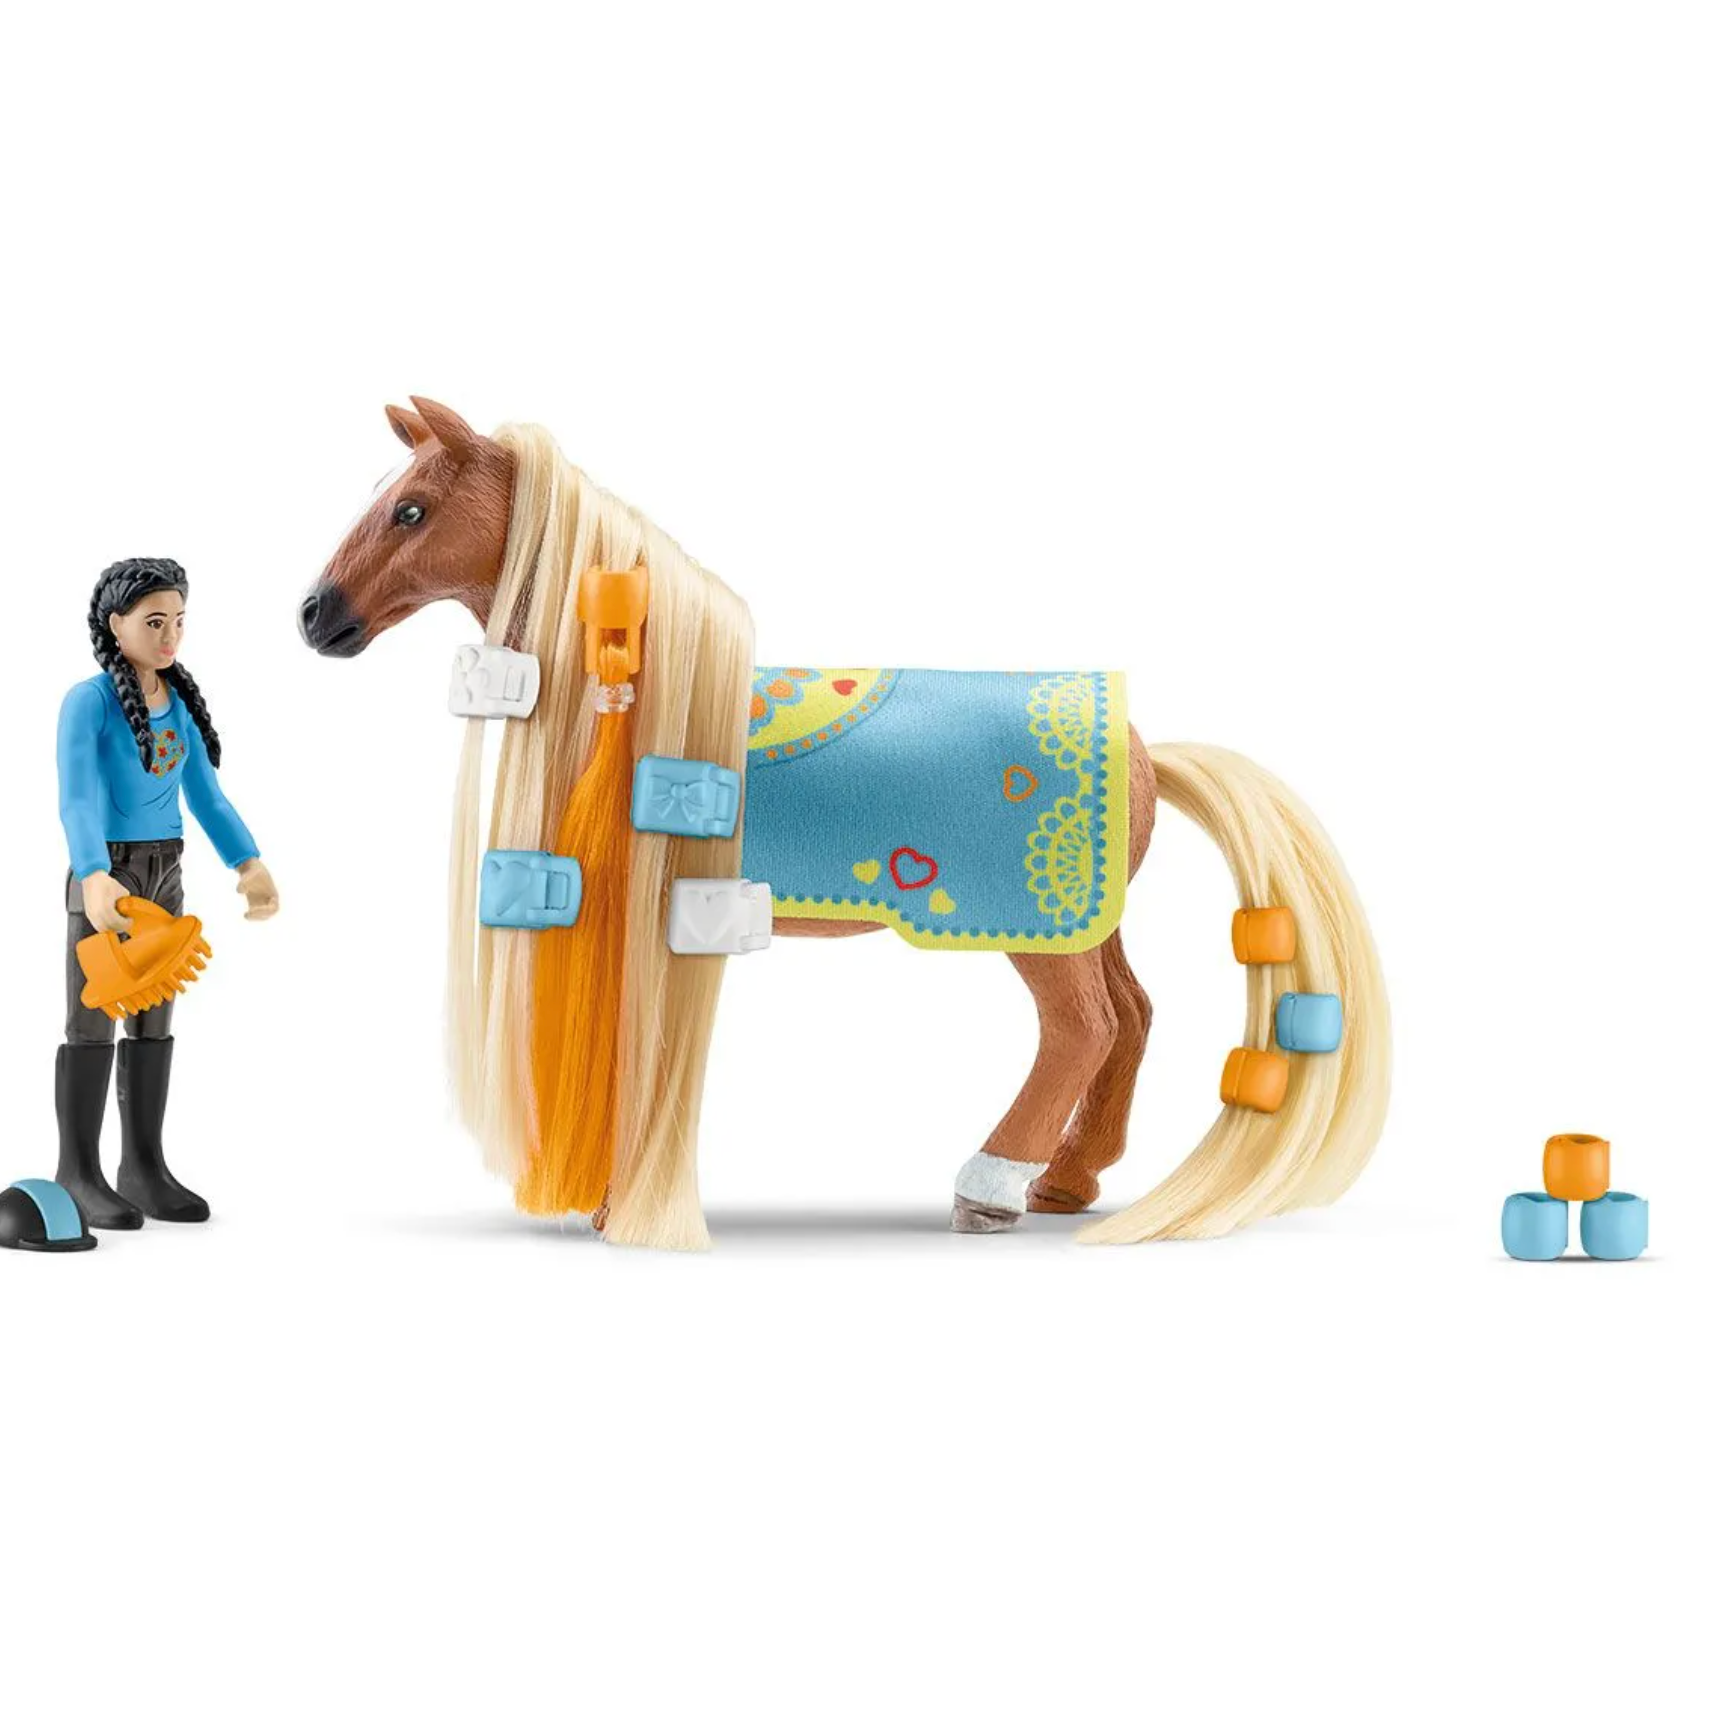 Schleich Horse Club Horse Box Tori And Princess Figure Multicolor